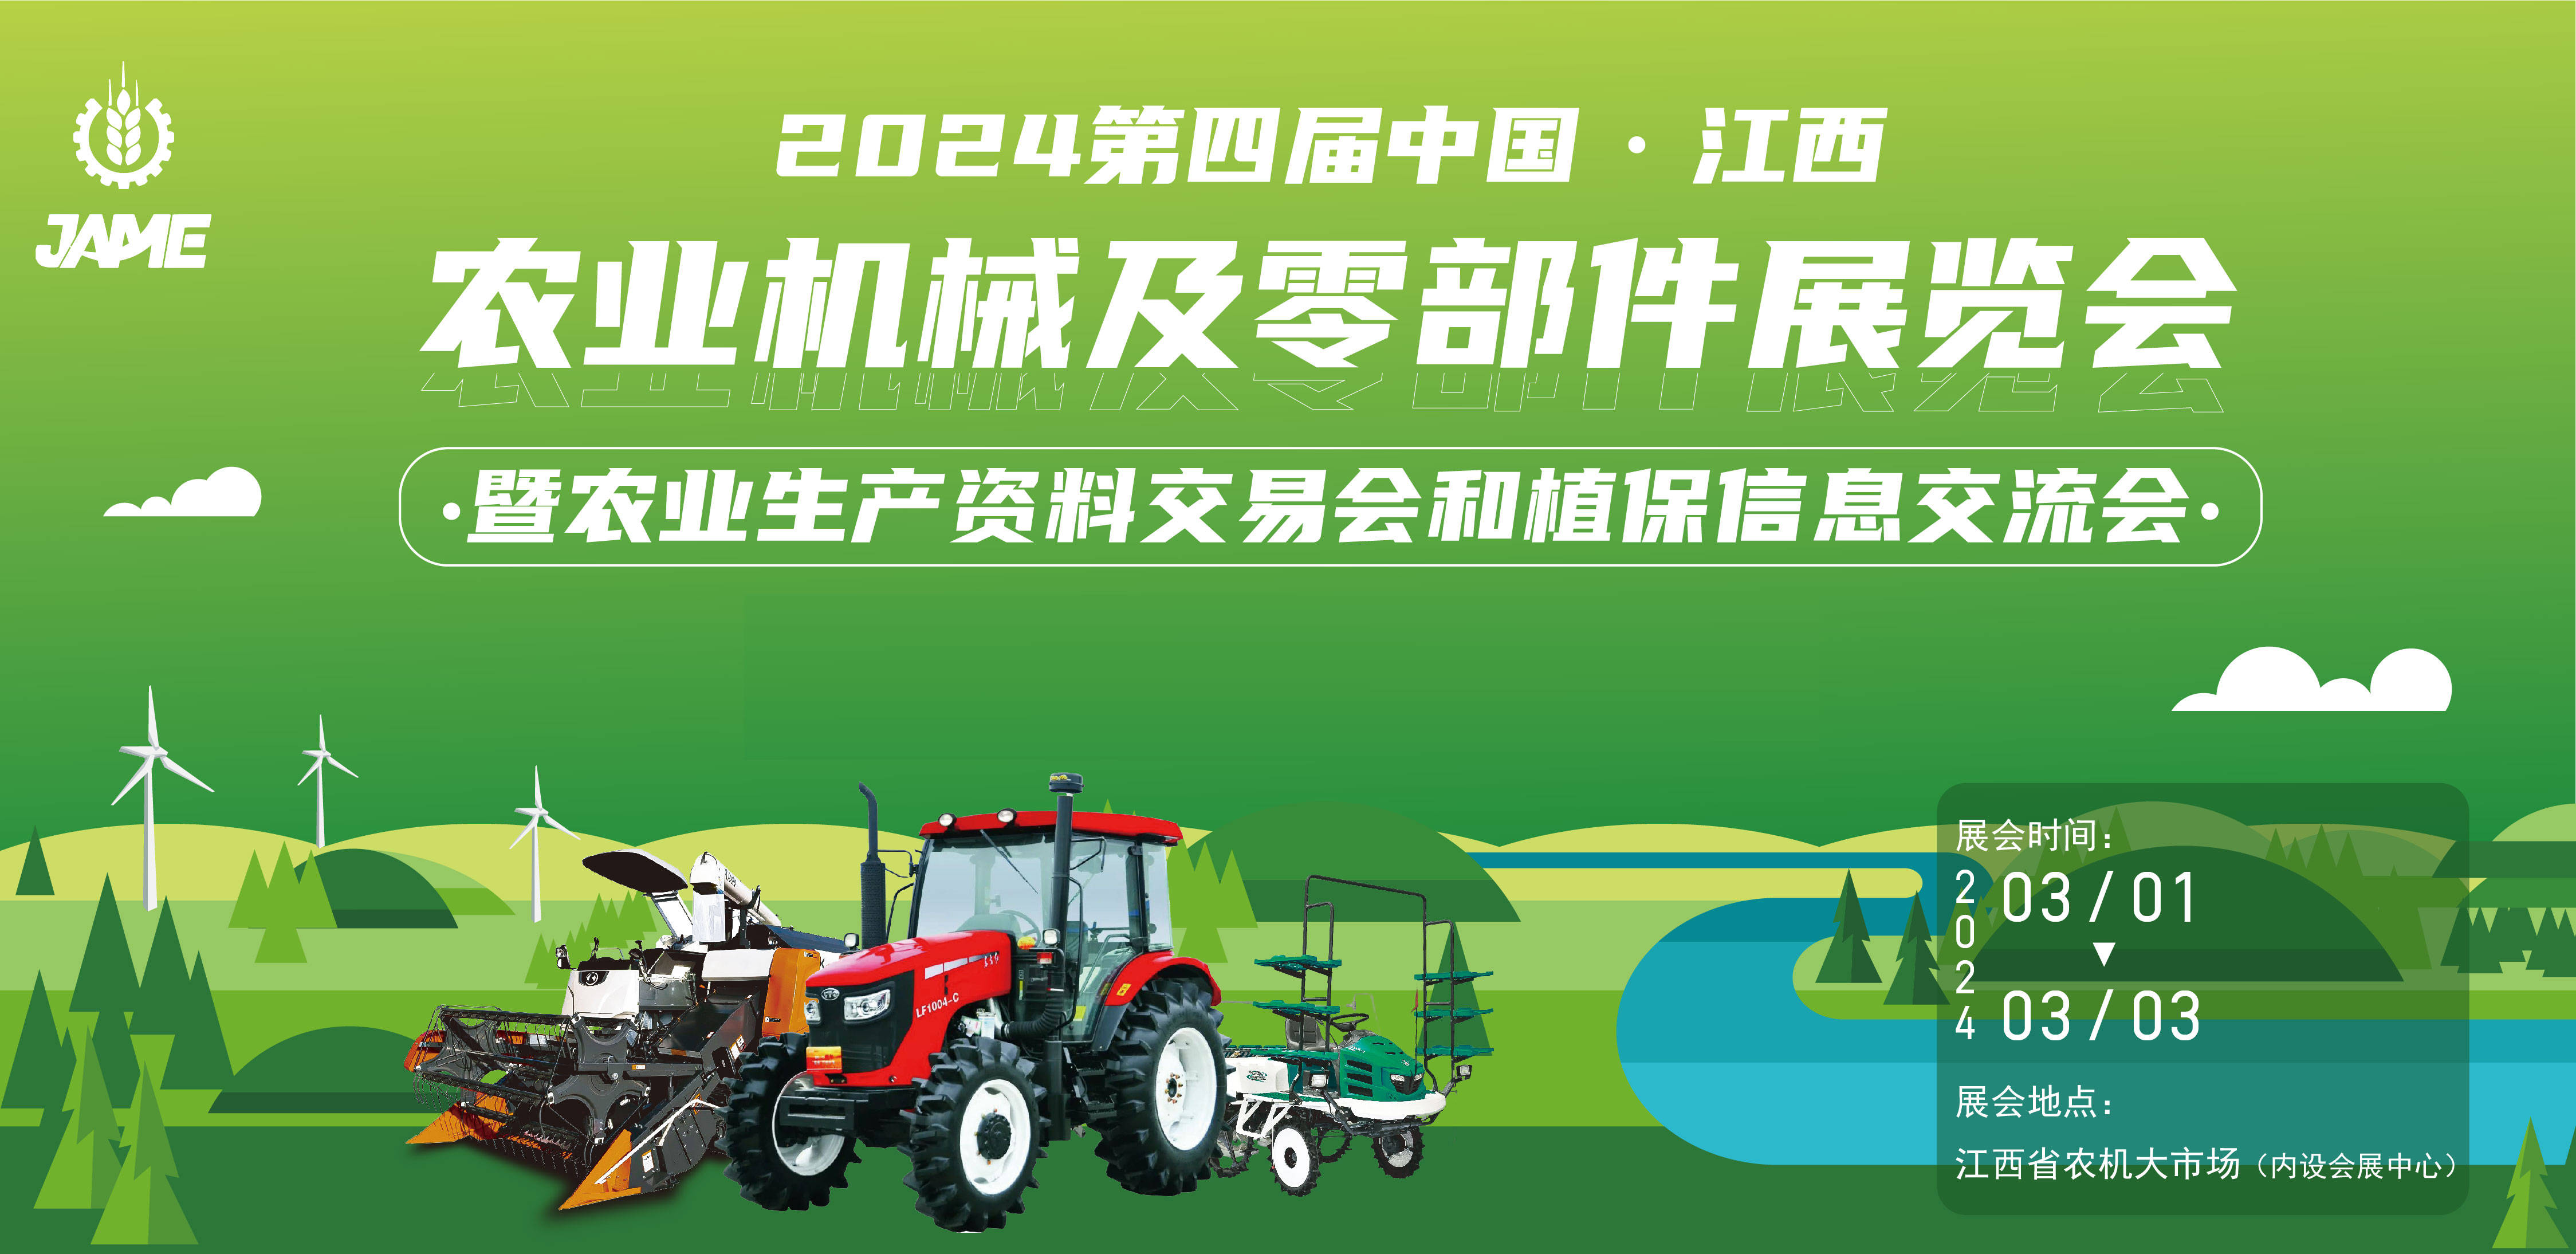 农业首展第四届中国· 江西农业机械及零部件展览会